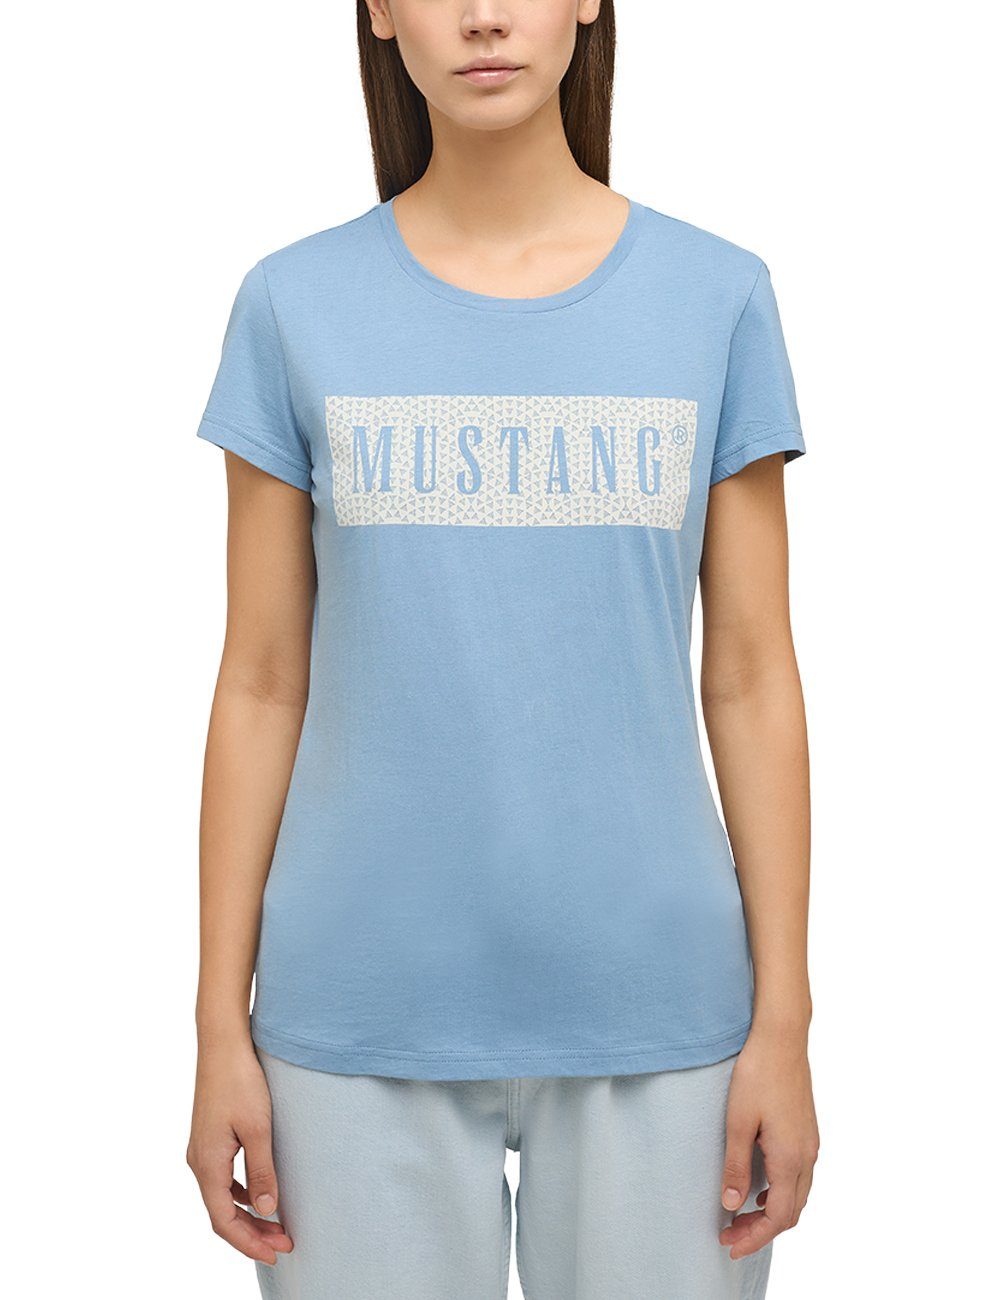 T-Shirt Kurzarmshirt Mustang mittelblau MUSTANG Print-Shirt